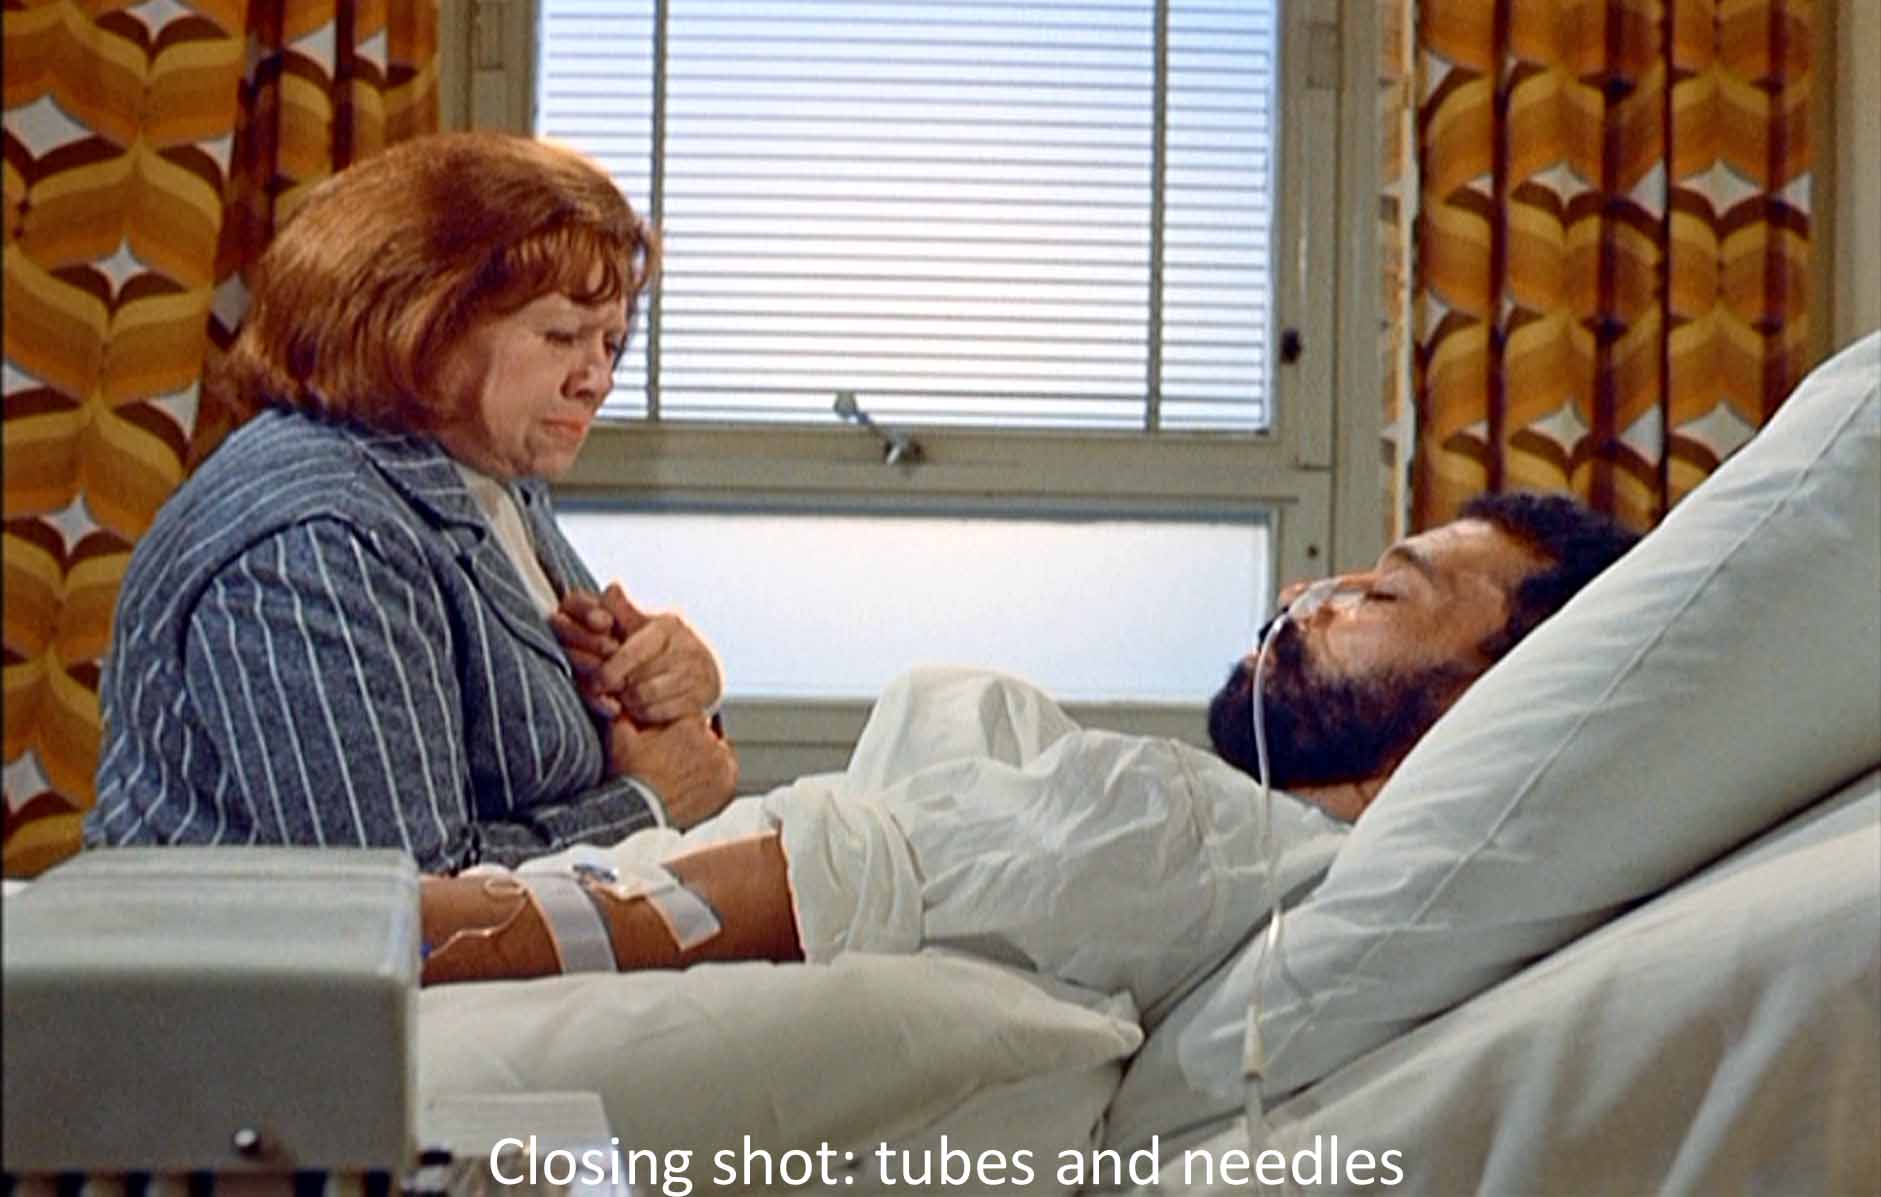 Closing shot: tubes and needles